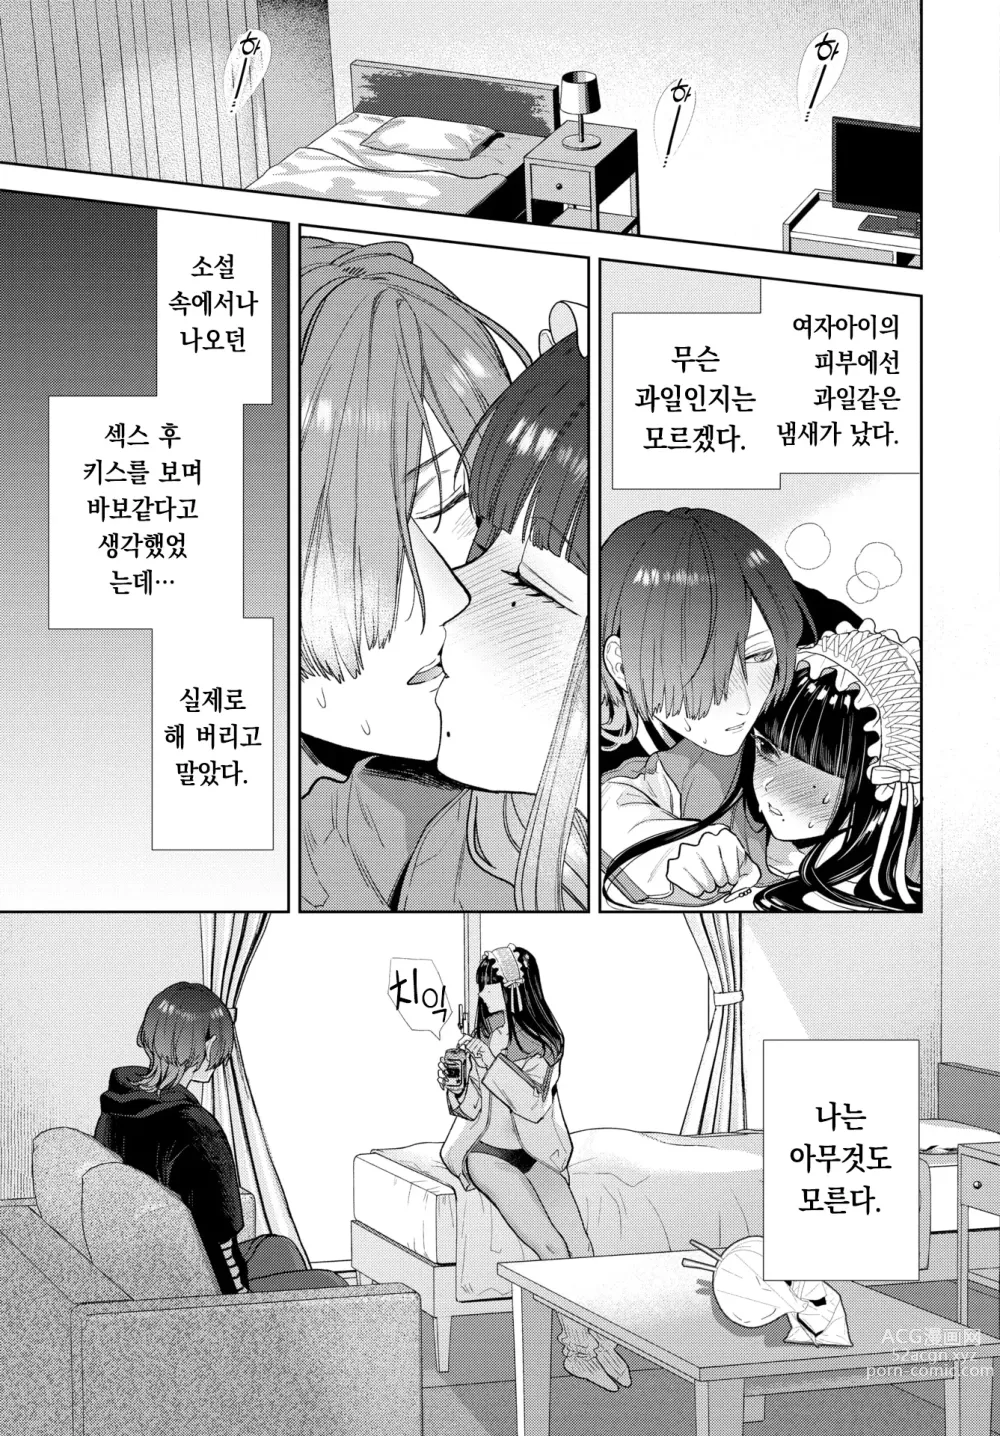 Page 26 of manga 사랑하는 라라치